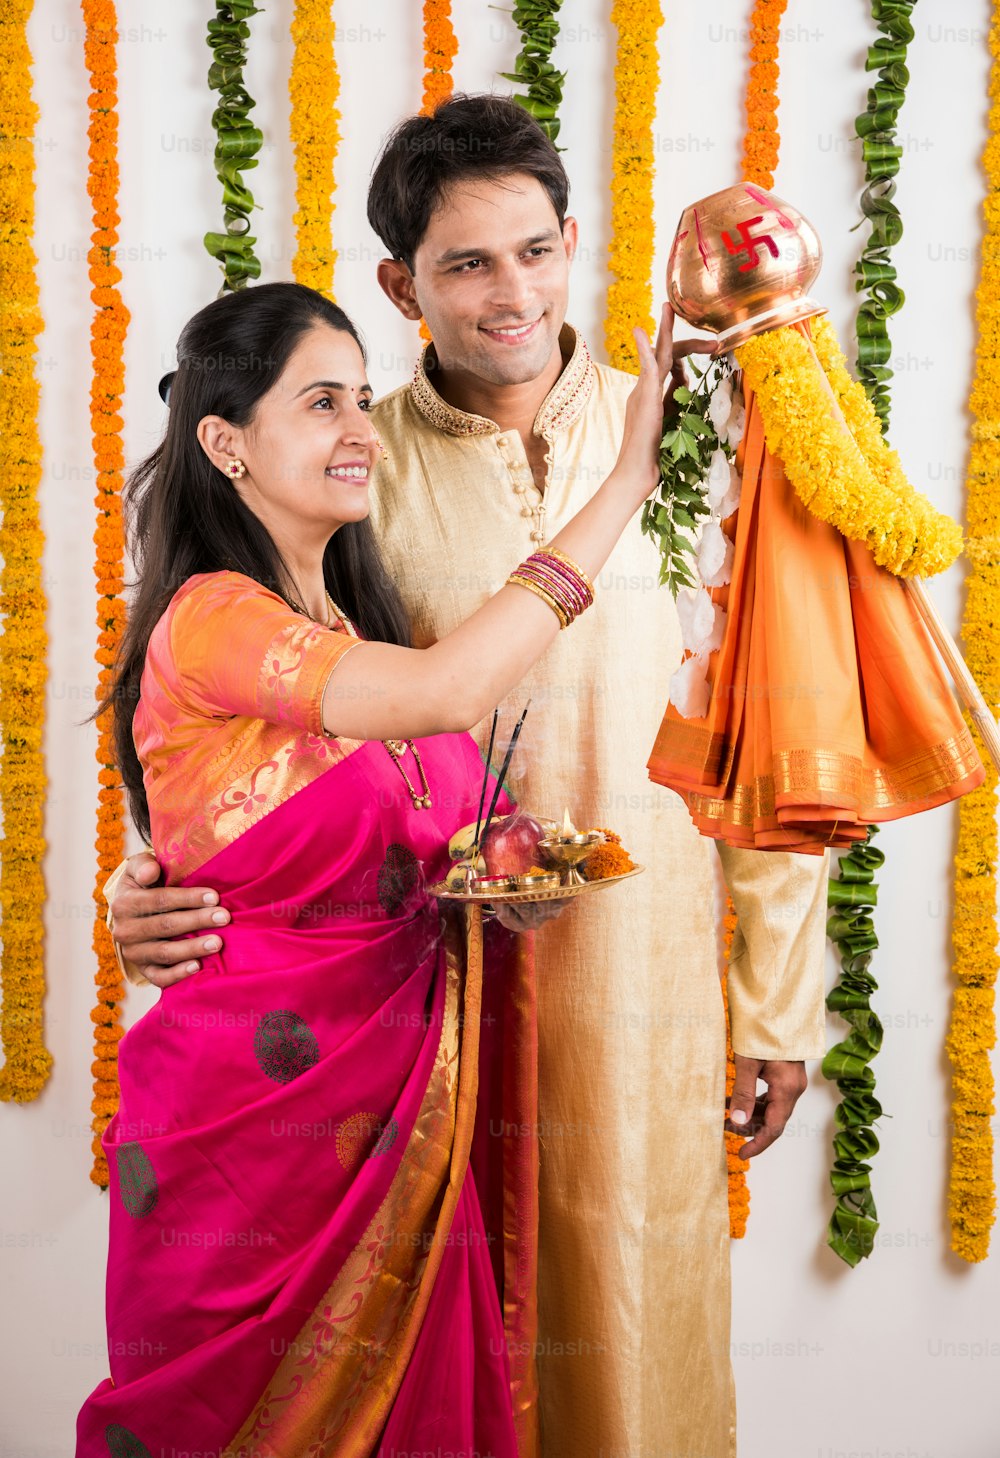 Kluges indisches Paar, das Gudhi Padwa Puja, asiatisches Paar und Puja Thali, indisches junges Paar, das Puja oder Pooja durchführt, hinduistisches Neujahrsfest Gudhi Padwa / Gudi Padwa, indisches Paar, das in traditioneller Kleidung betet